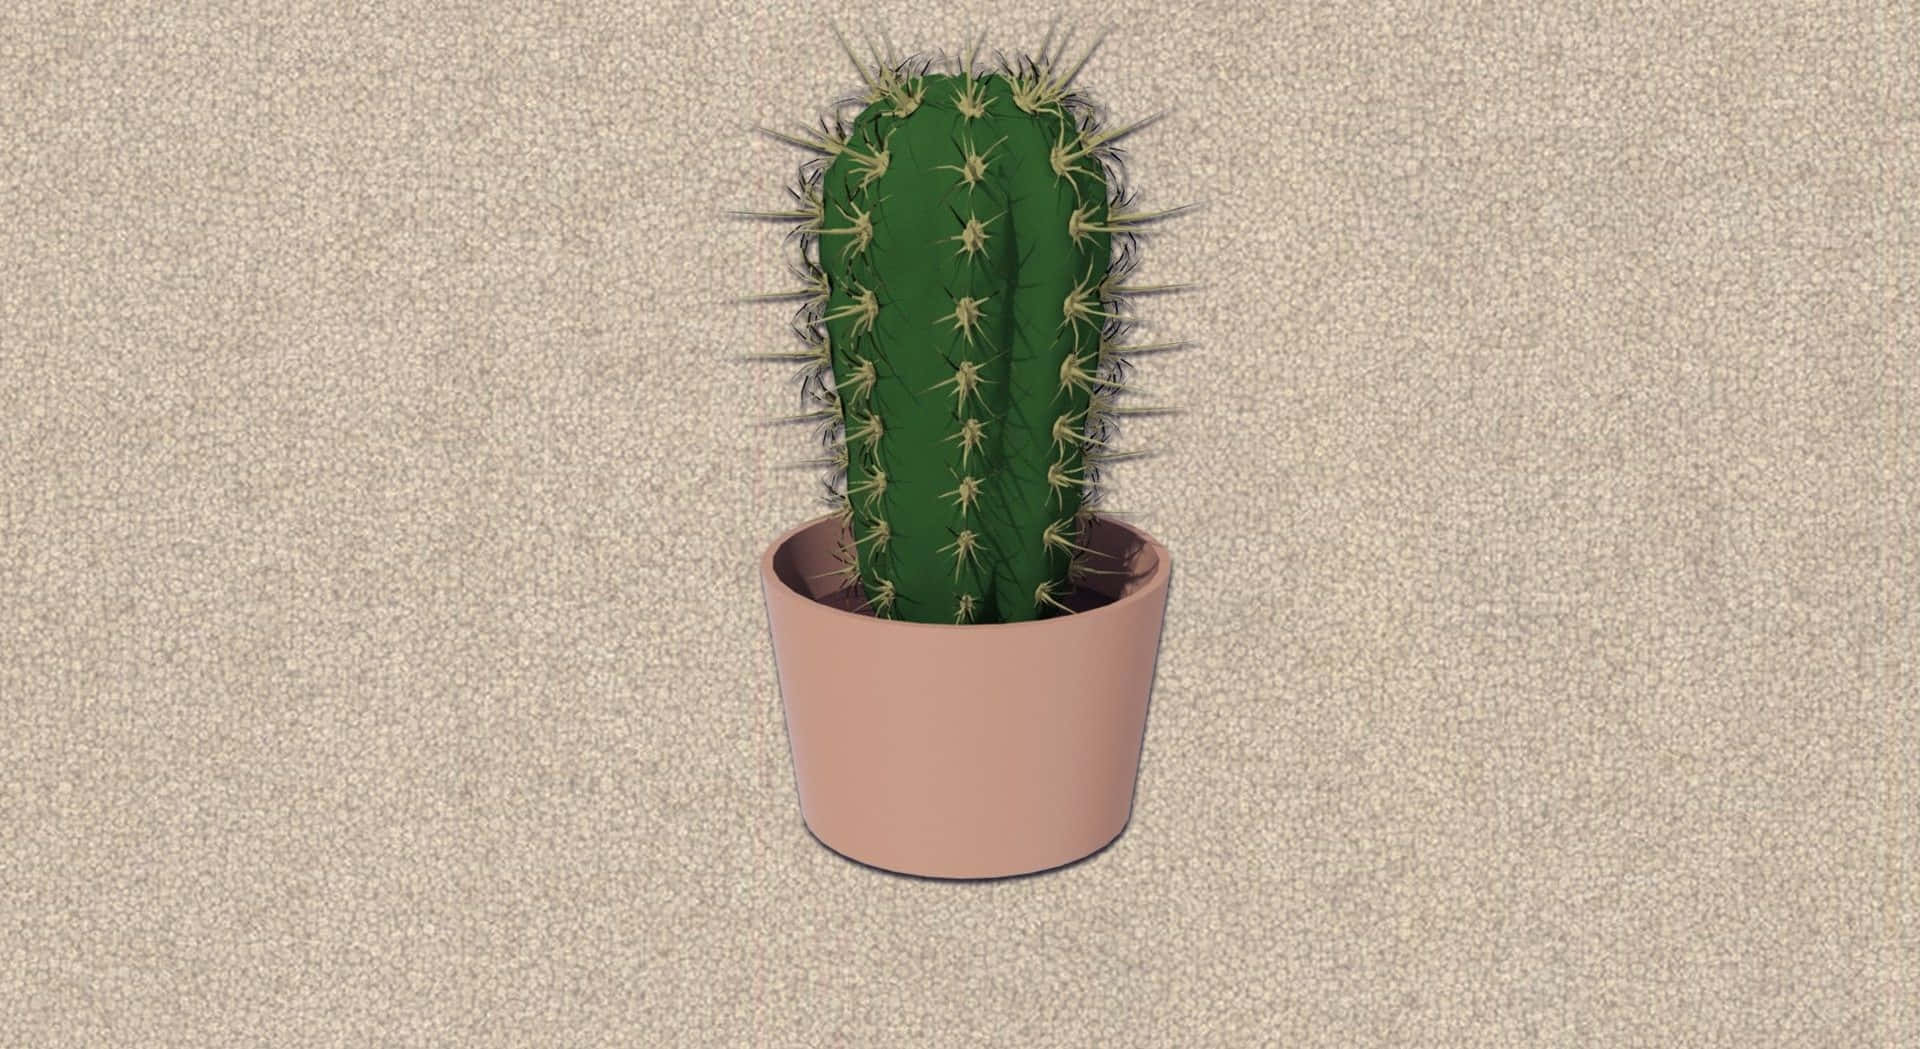 Imagenlinda De Un Cactus De Interior.